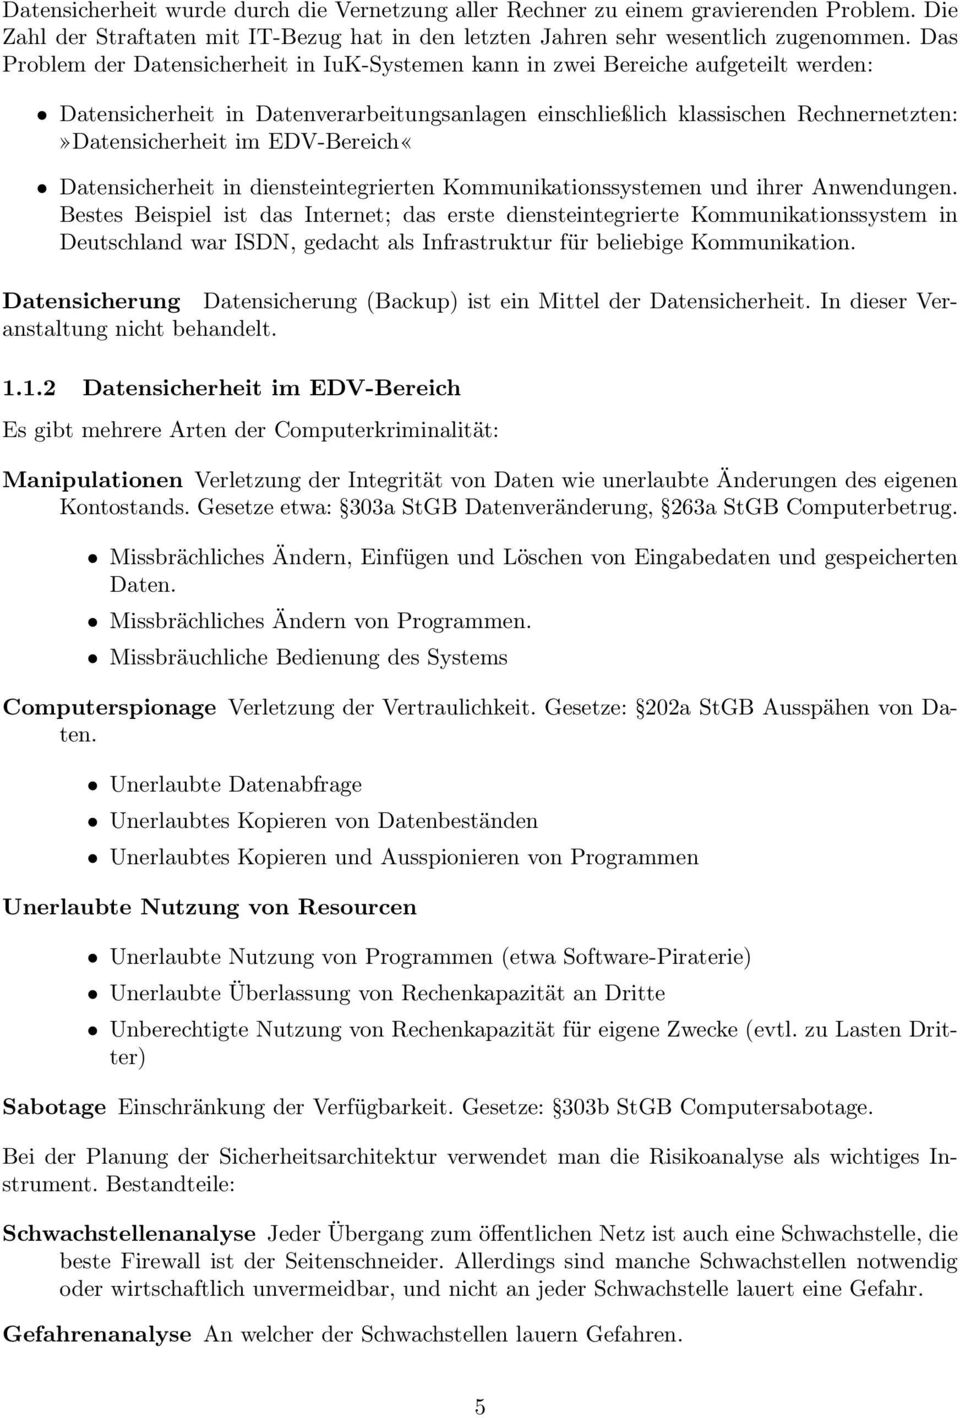 EDV-Bereich«Datensicherheit in diensteintegrierten Kommunikationssystemen und ihrer Anwendungen.